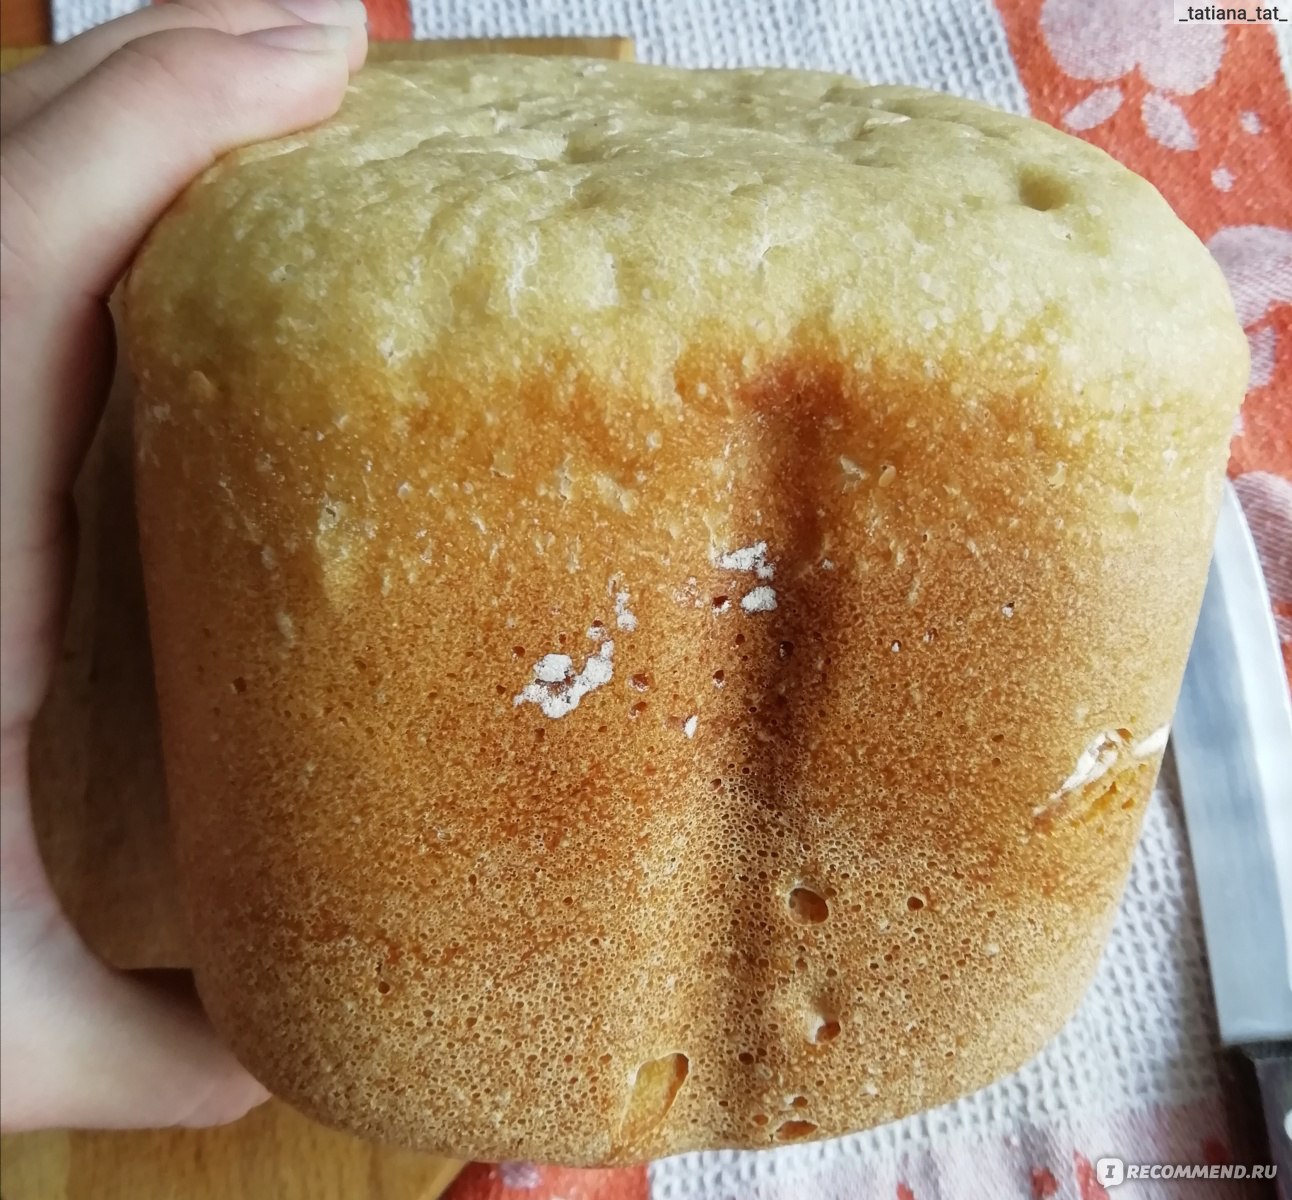 Тесто в хлебопечке горение. Хлебопечь Gorenje bm910wii - месильная лопасть. Хлеб в хлебопечке горение. Хлебопечь 910 горение. Рецепт хлеба в хлебопечке Gorenje bm910wii.